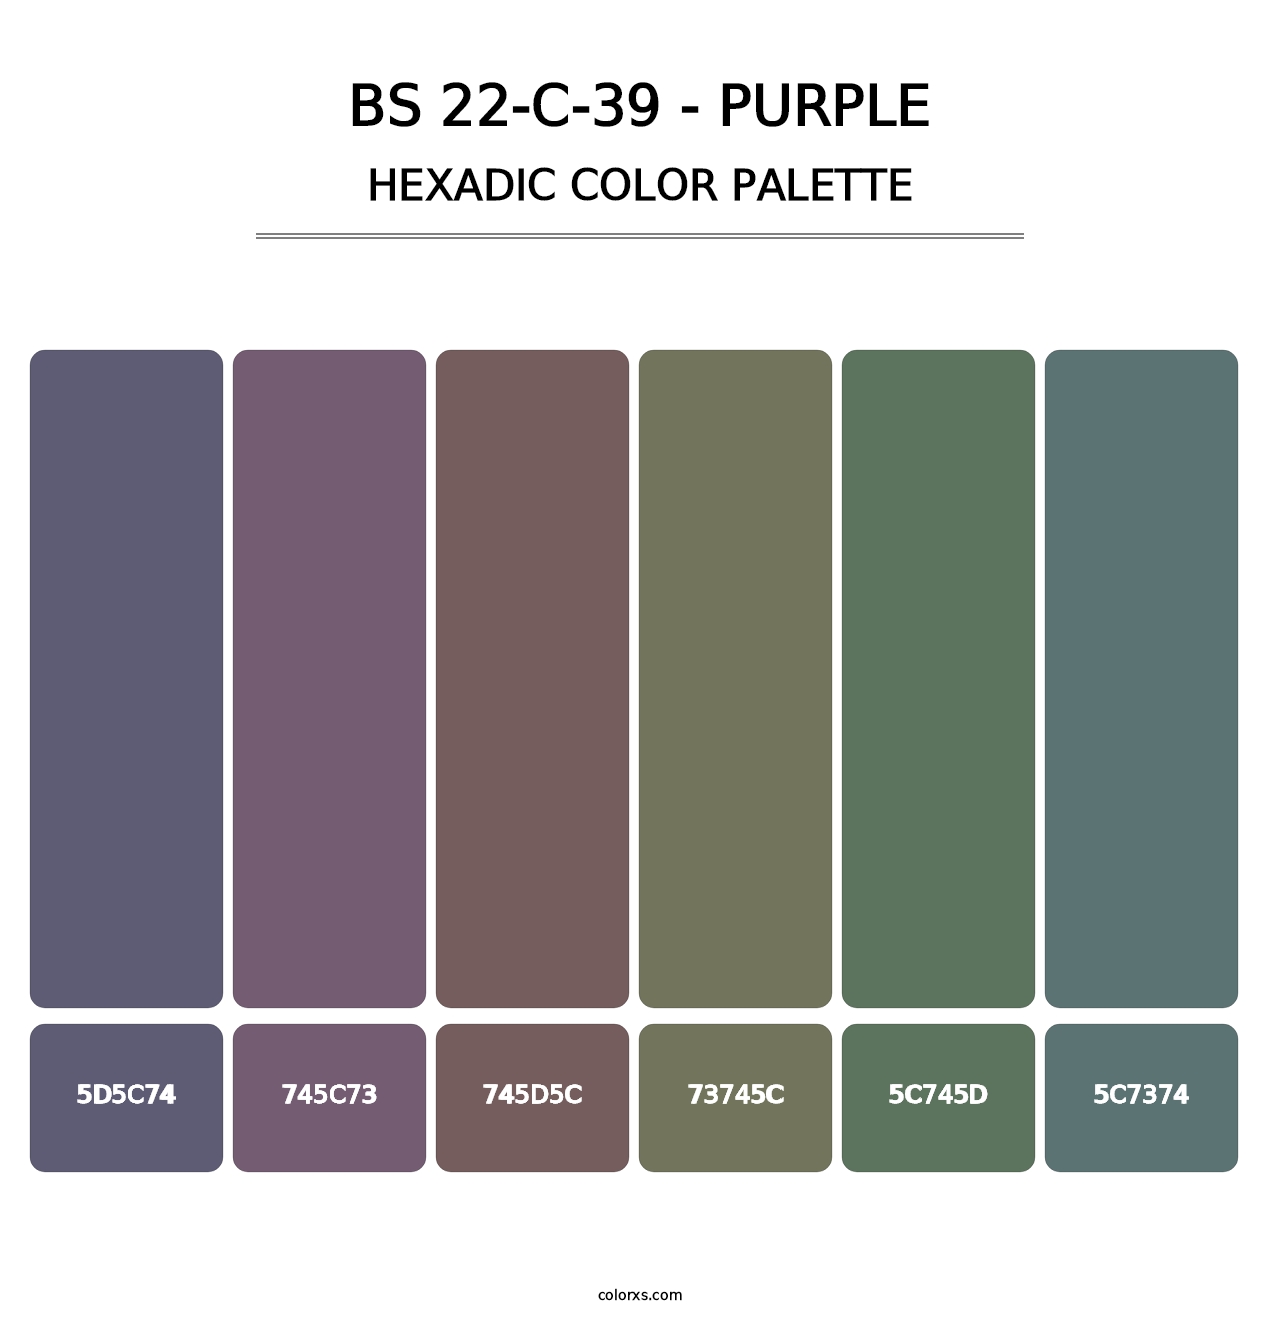 BS 22-C-39 - Purple - Hexadic Color Palette